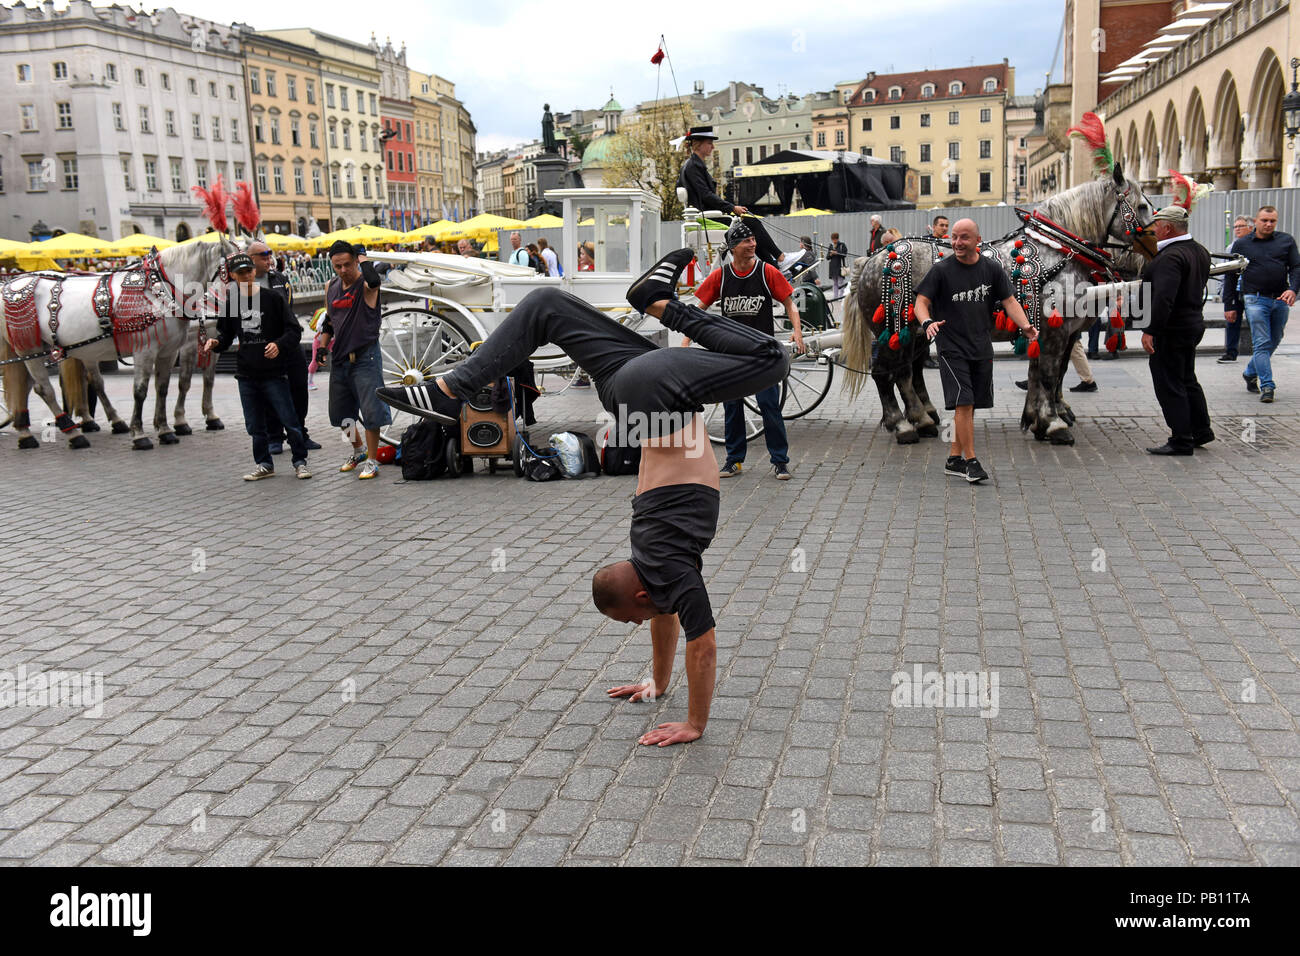 Artistes Danseurs de rue en face de la calèche à Cracovie Pologne Banque D'Images